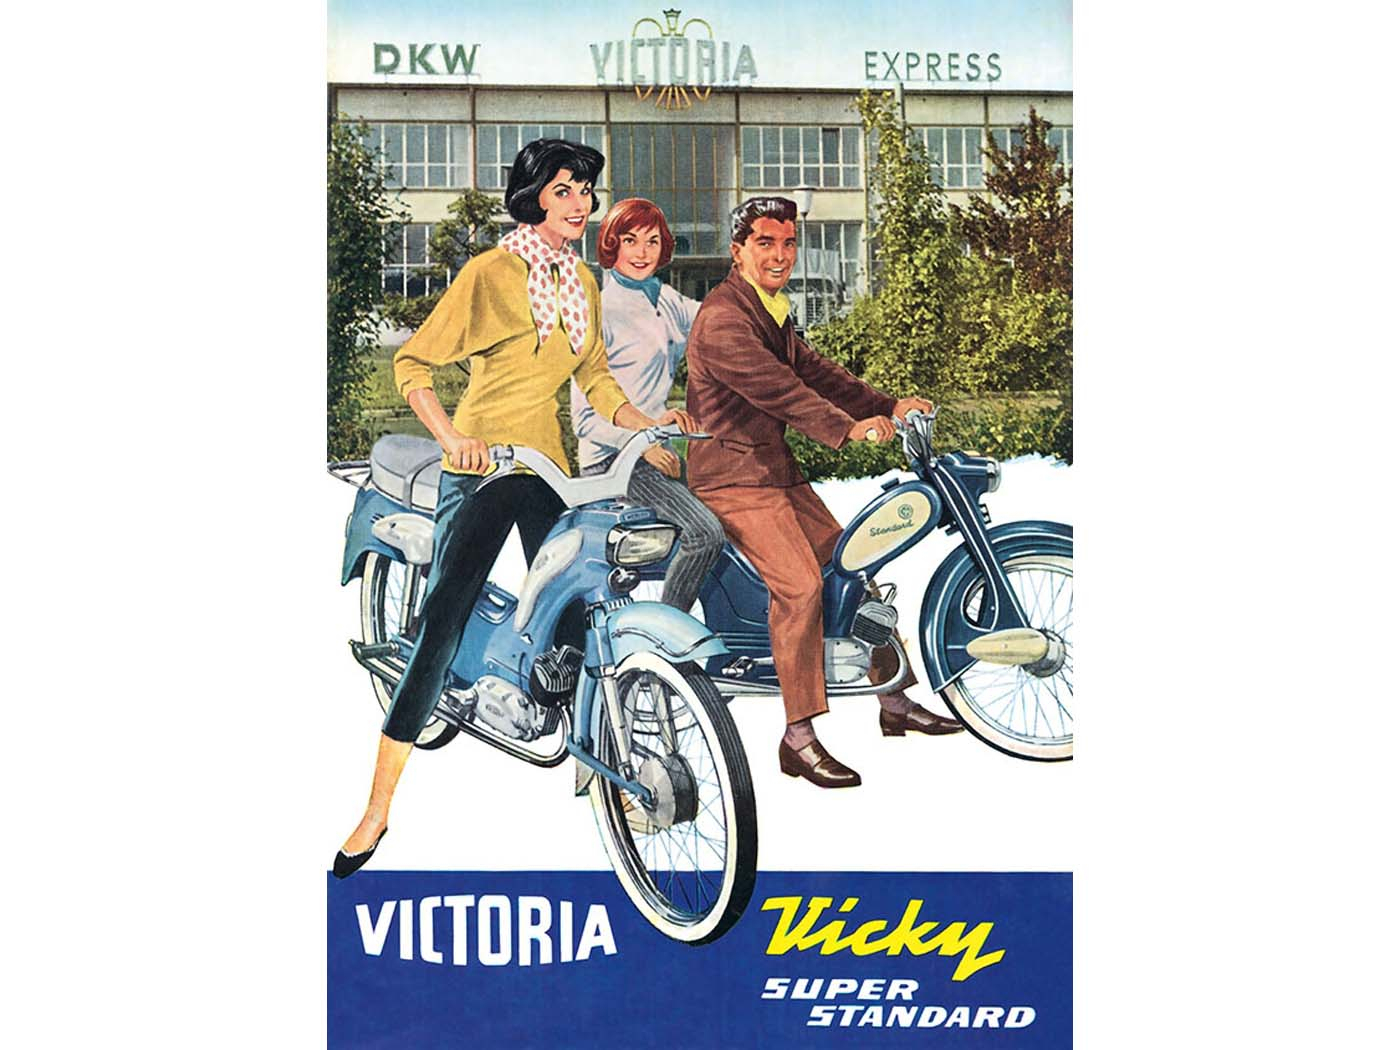 Werbeplakat Nachdruck 42cm 29cm voor Victoria (DKW Express), Vicky Standard, Vicky Super Luxus